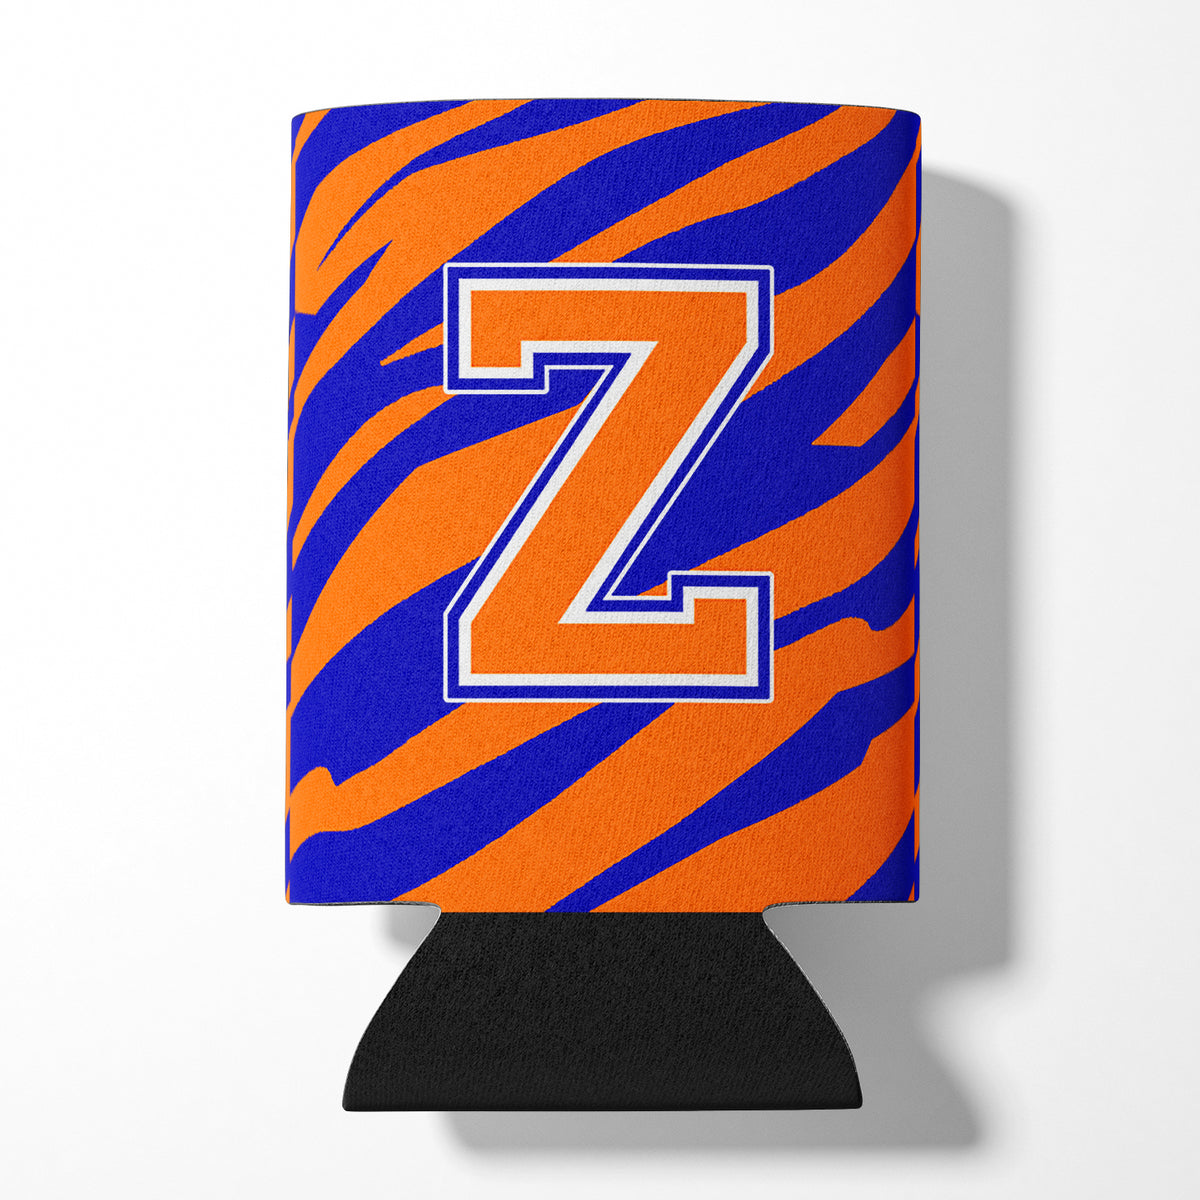 Letter Z Initial Monogram Tiger Stripe Blue Orange Can or Bottle Beverage Insulator Hugger